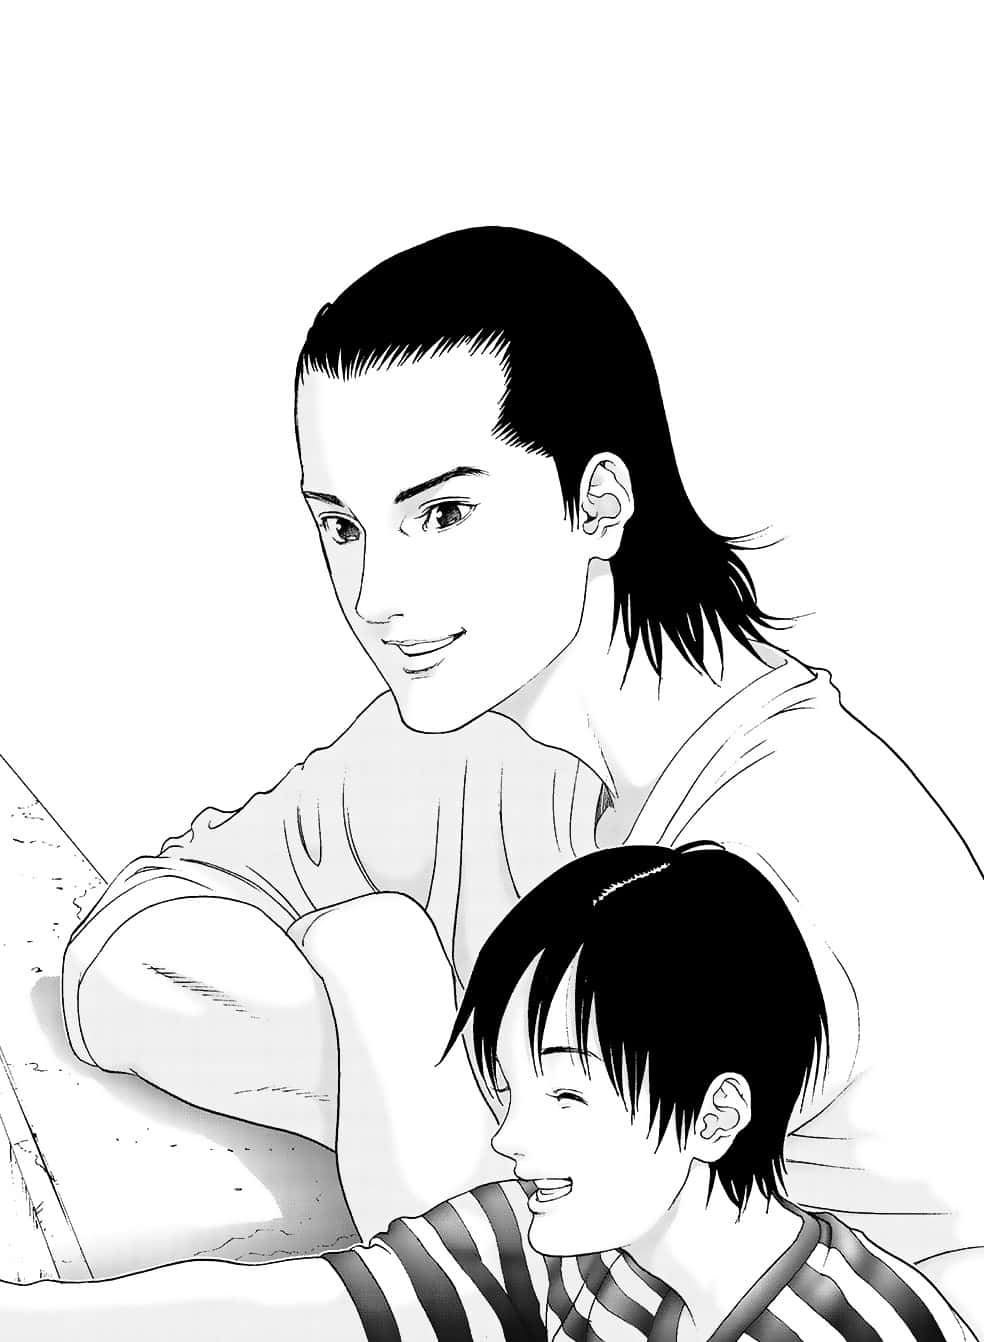 Smiling Adultand Child Manga Style Wallpaper